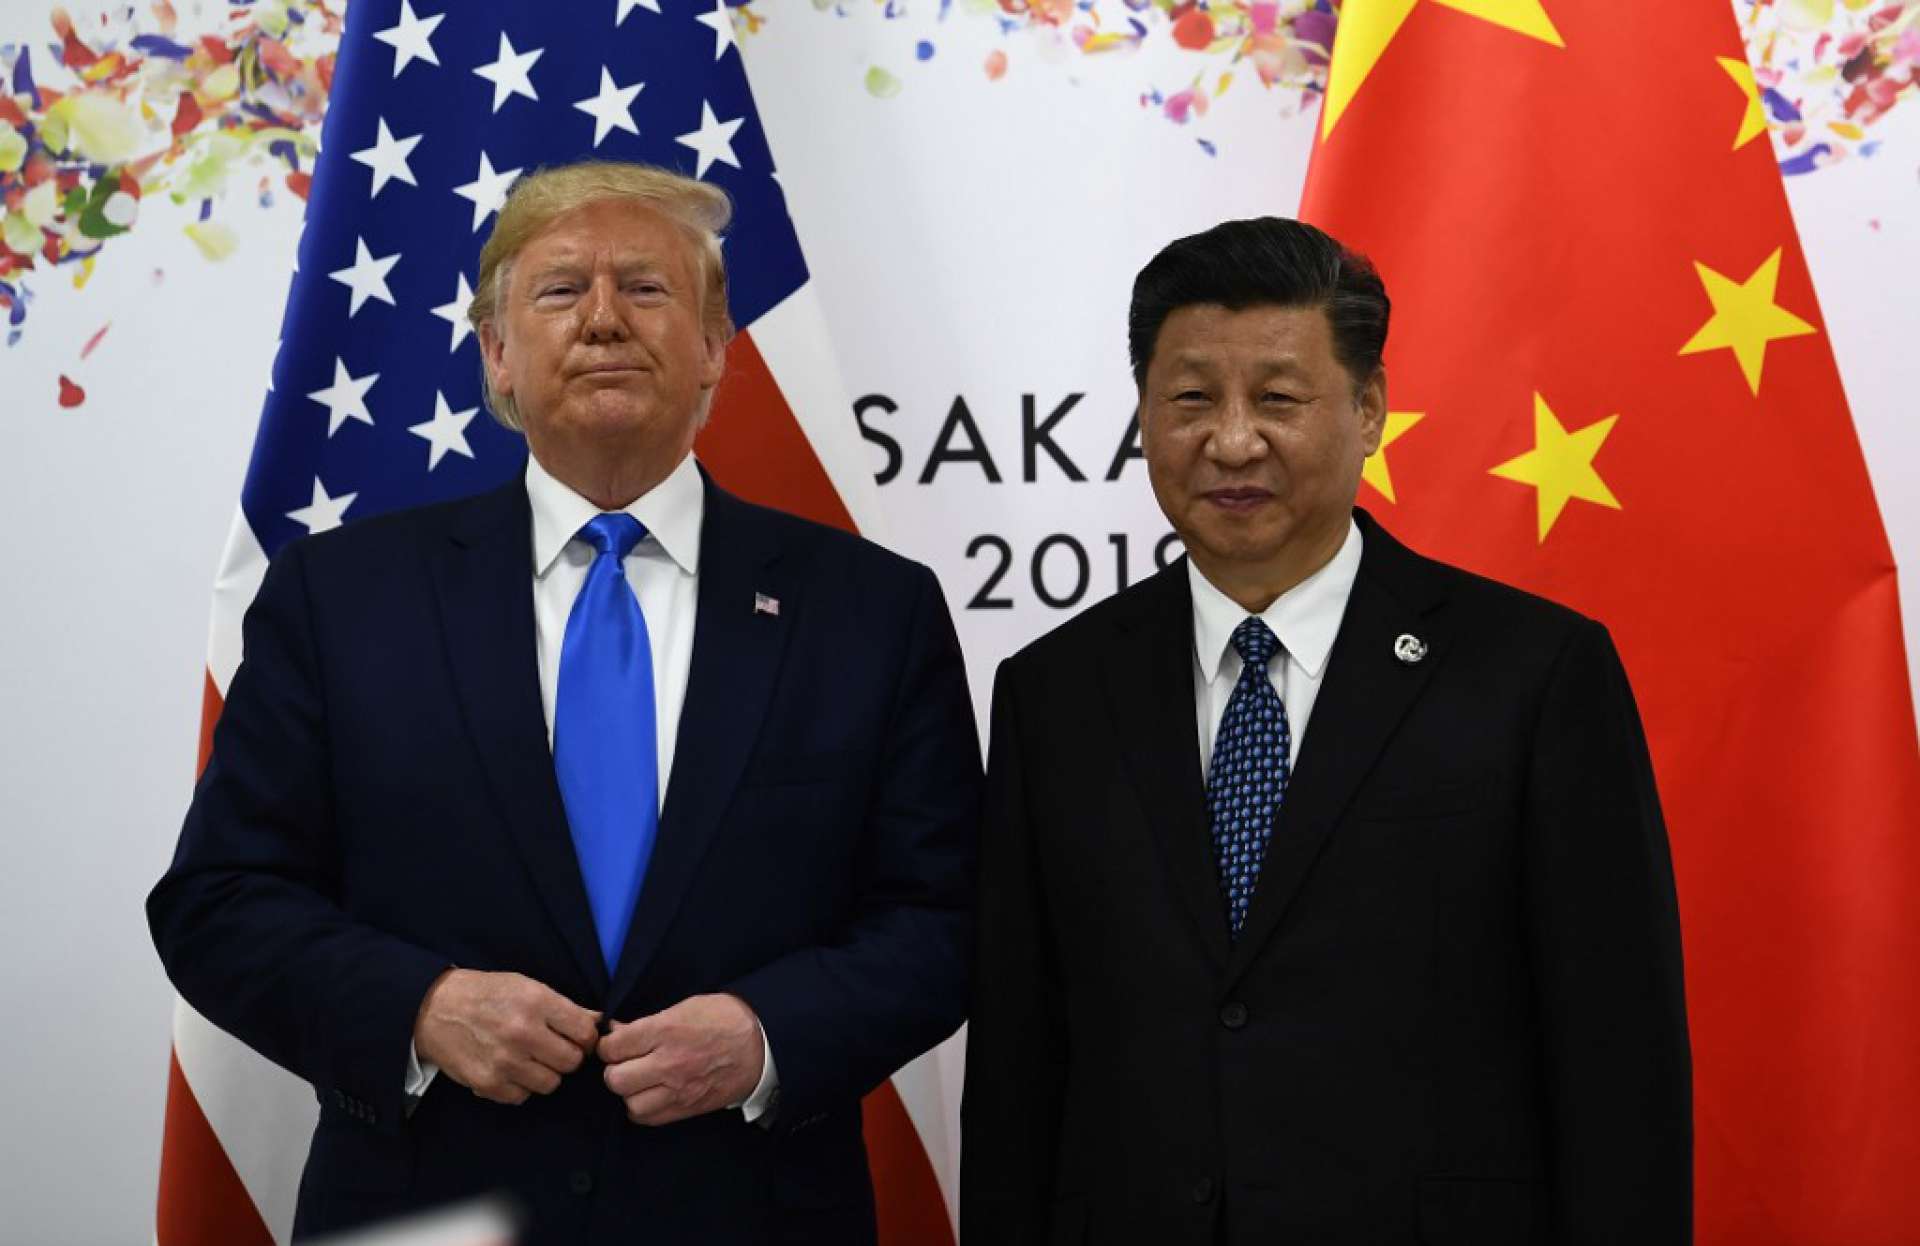 Donald Trump e Xi Jinping têm trocado farpas em relação às responsabilidades sobre a pandemia de coronavírus(Foto: Brendan Smialowski / AFP)